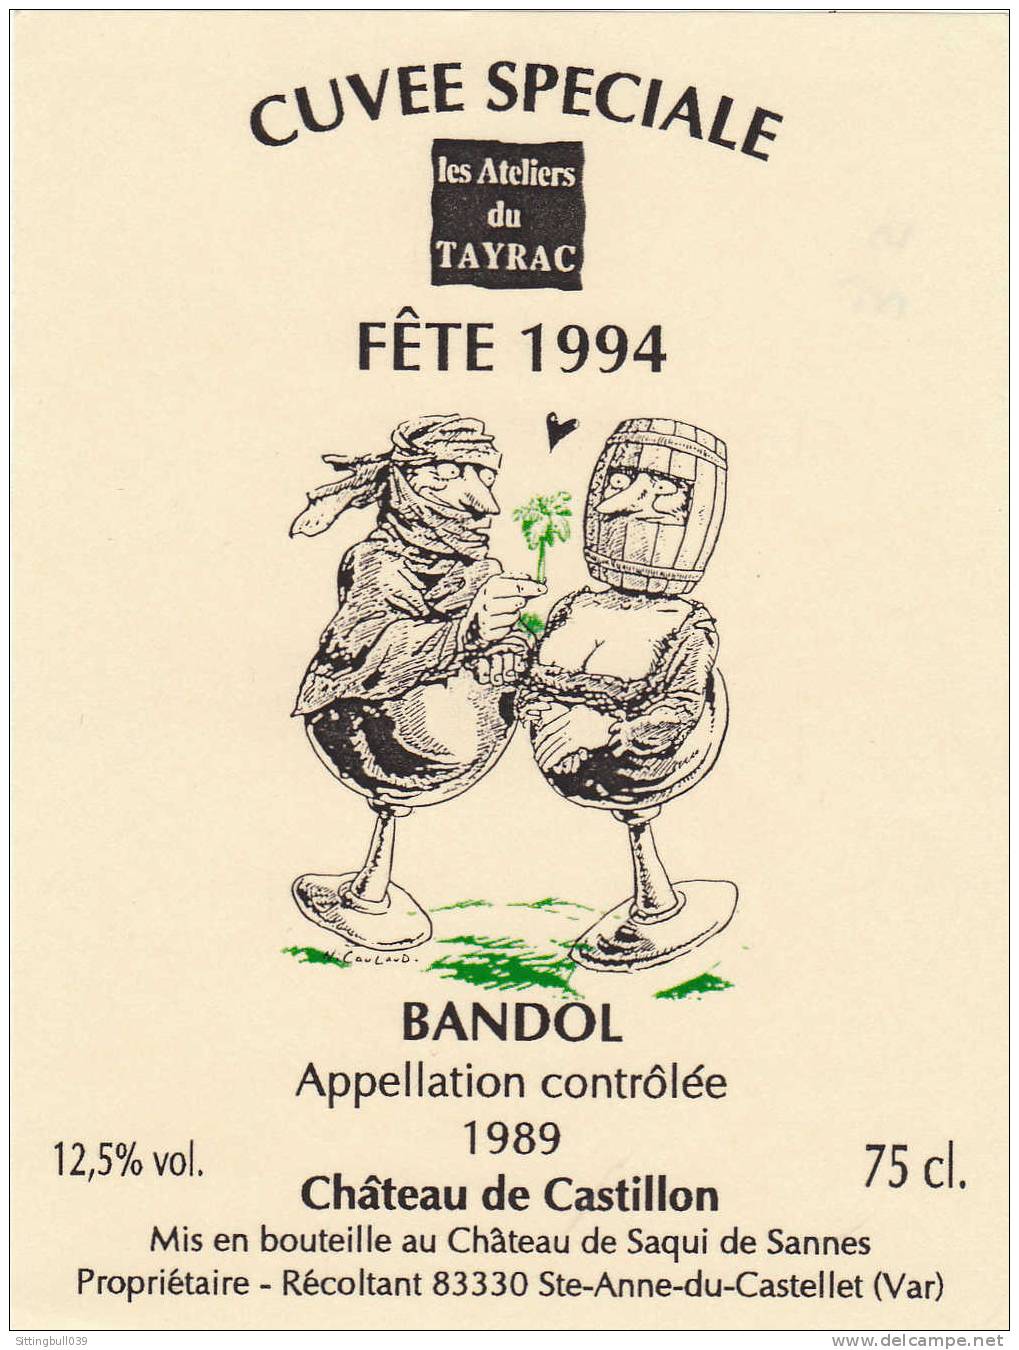 NICOULAUD. Etiquette De Vin, Cuvée Spéciale Les Ateliers Du Tayrac, Fête 1994. Château De Castillon Pour Un BANDOL 1989. - Werbeobjekte